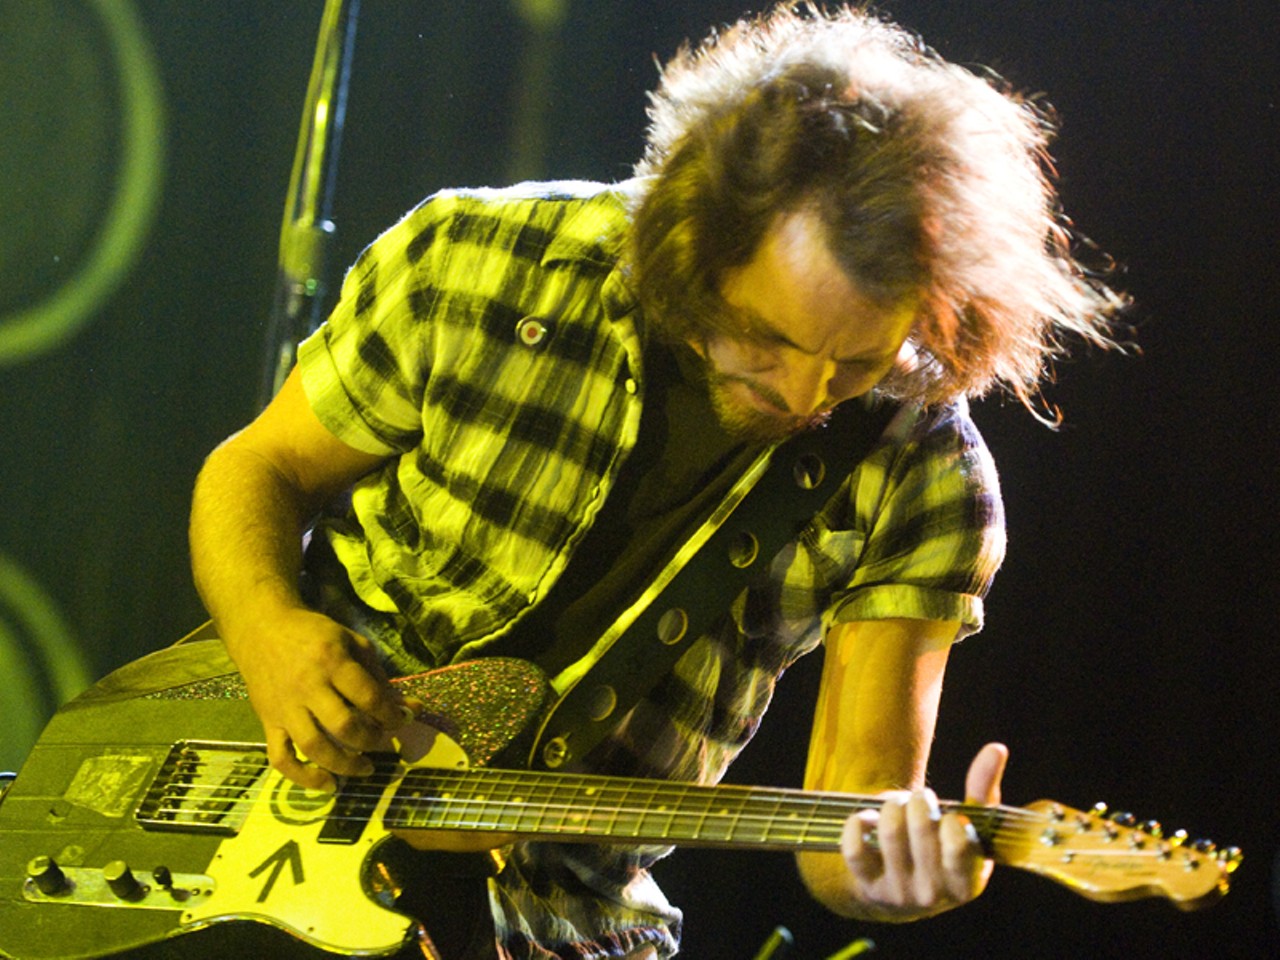 Eddie Vedder of Pearl Jam.